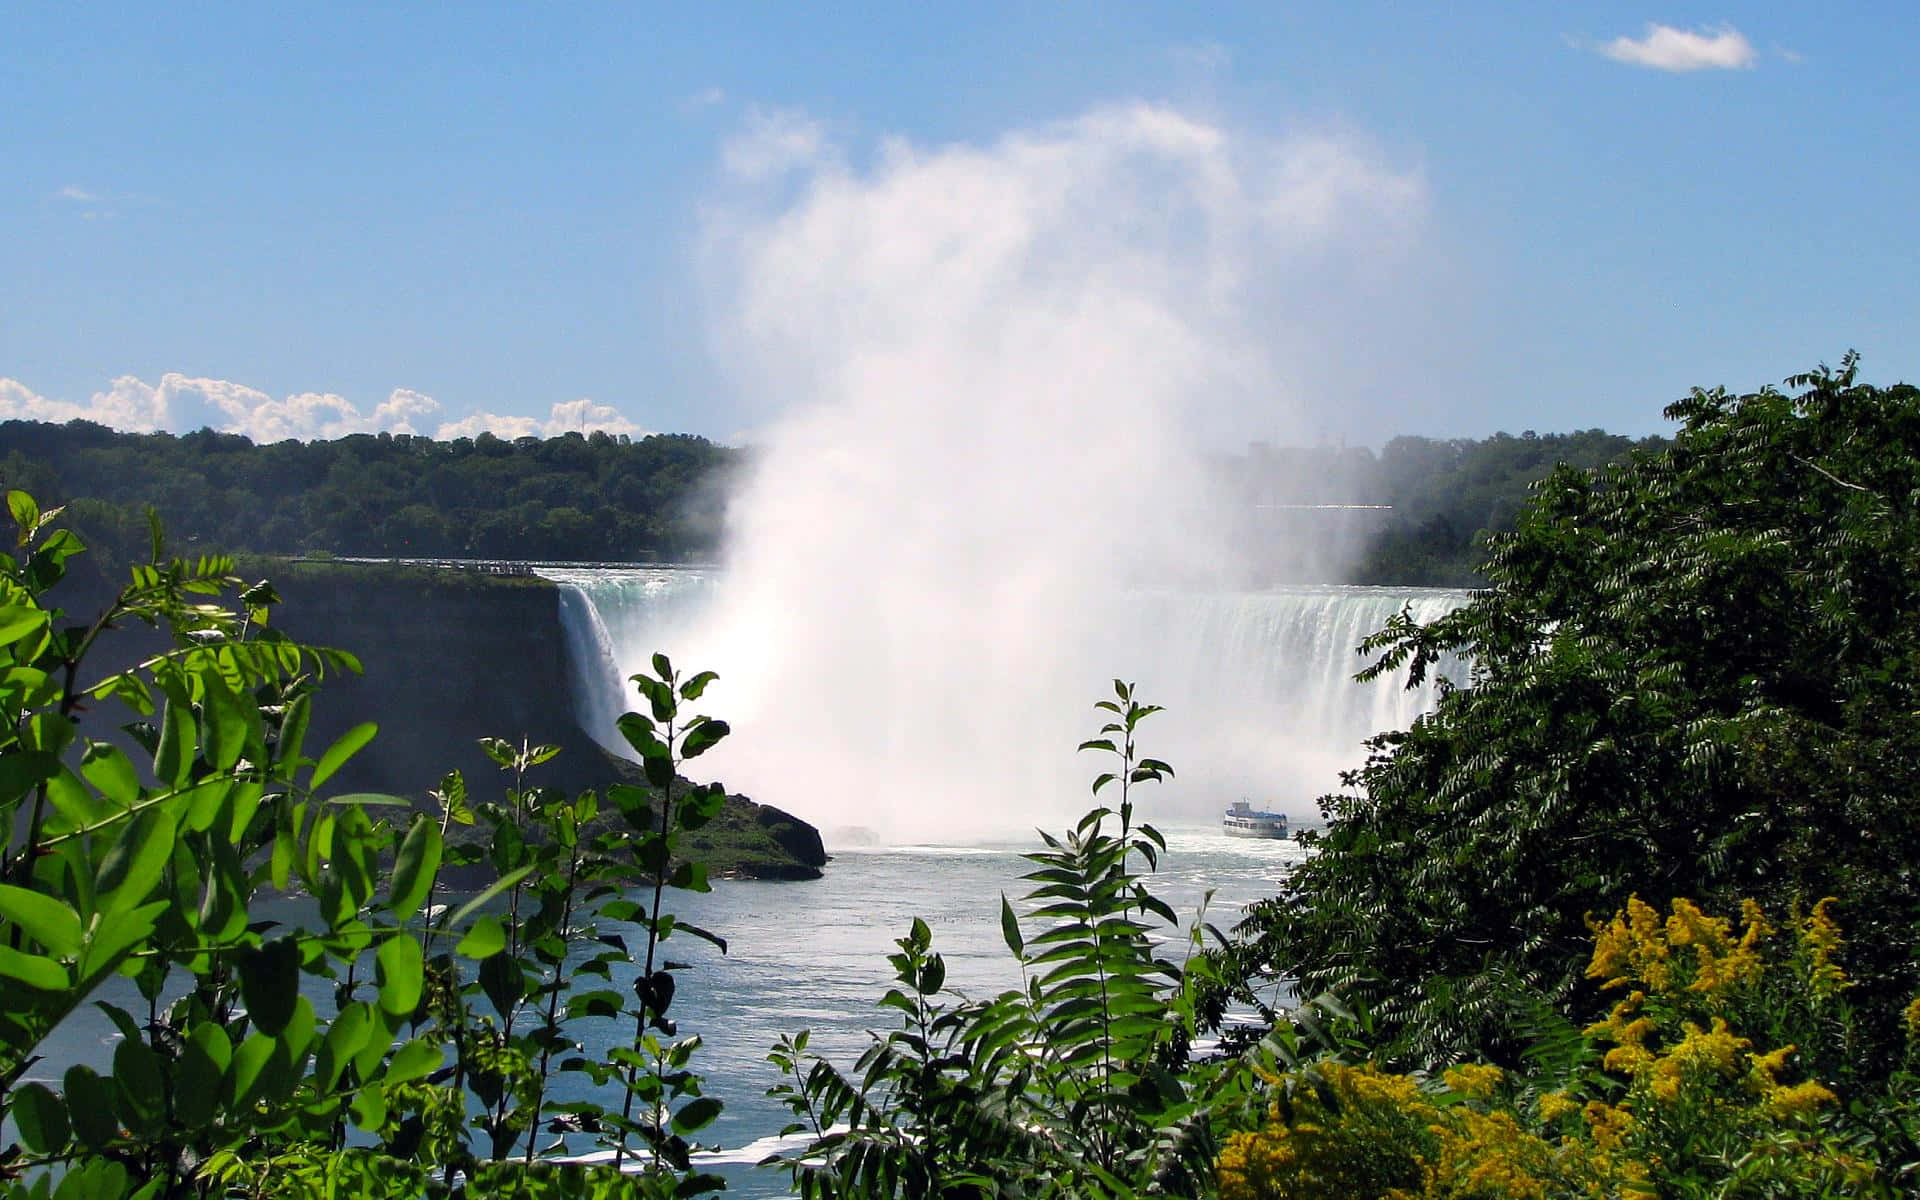 Den majestætiske kraft af Niagara Falls i 720p opløsning.